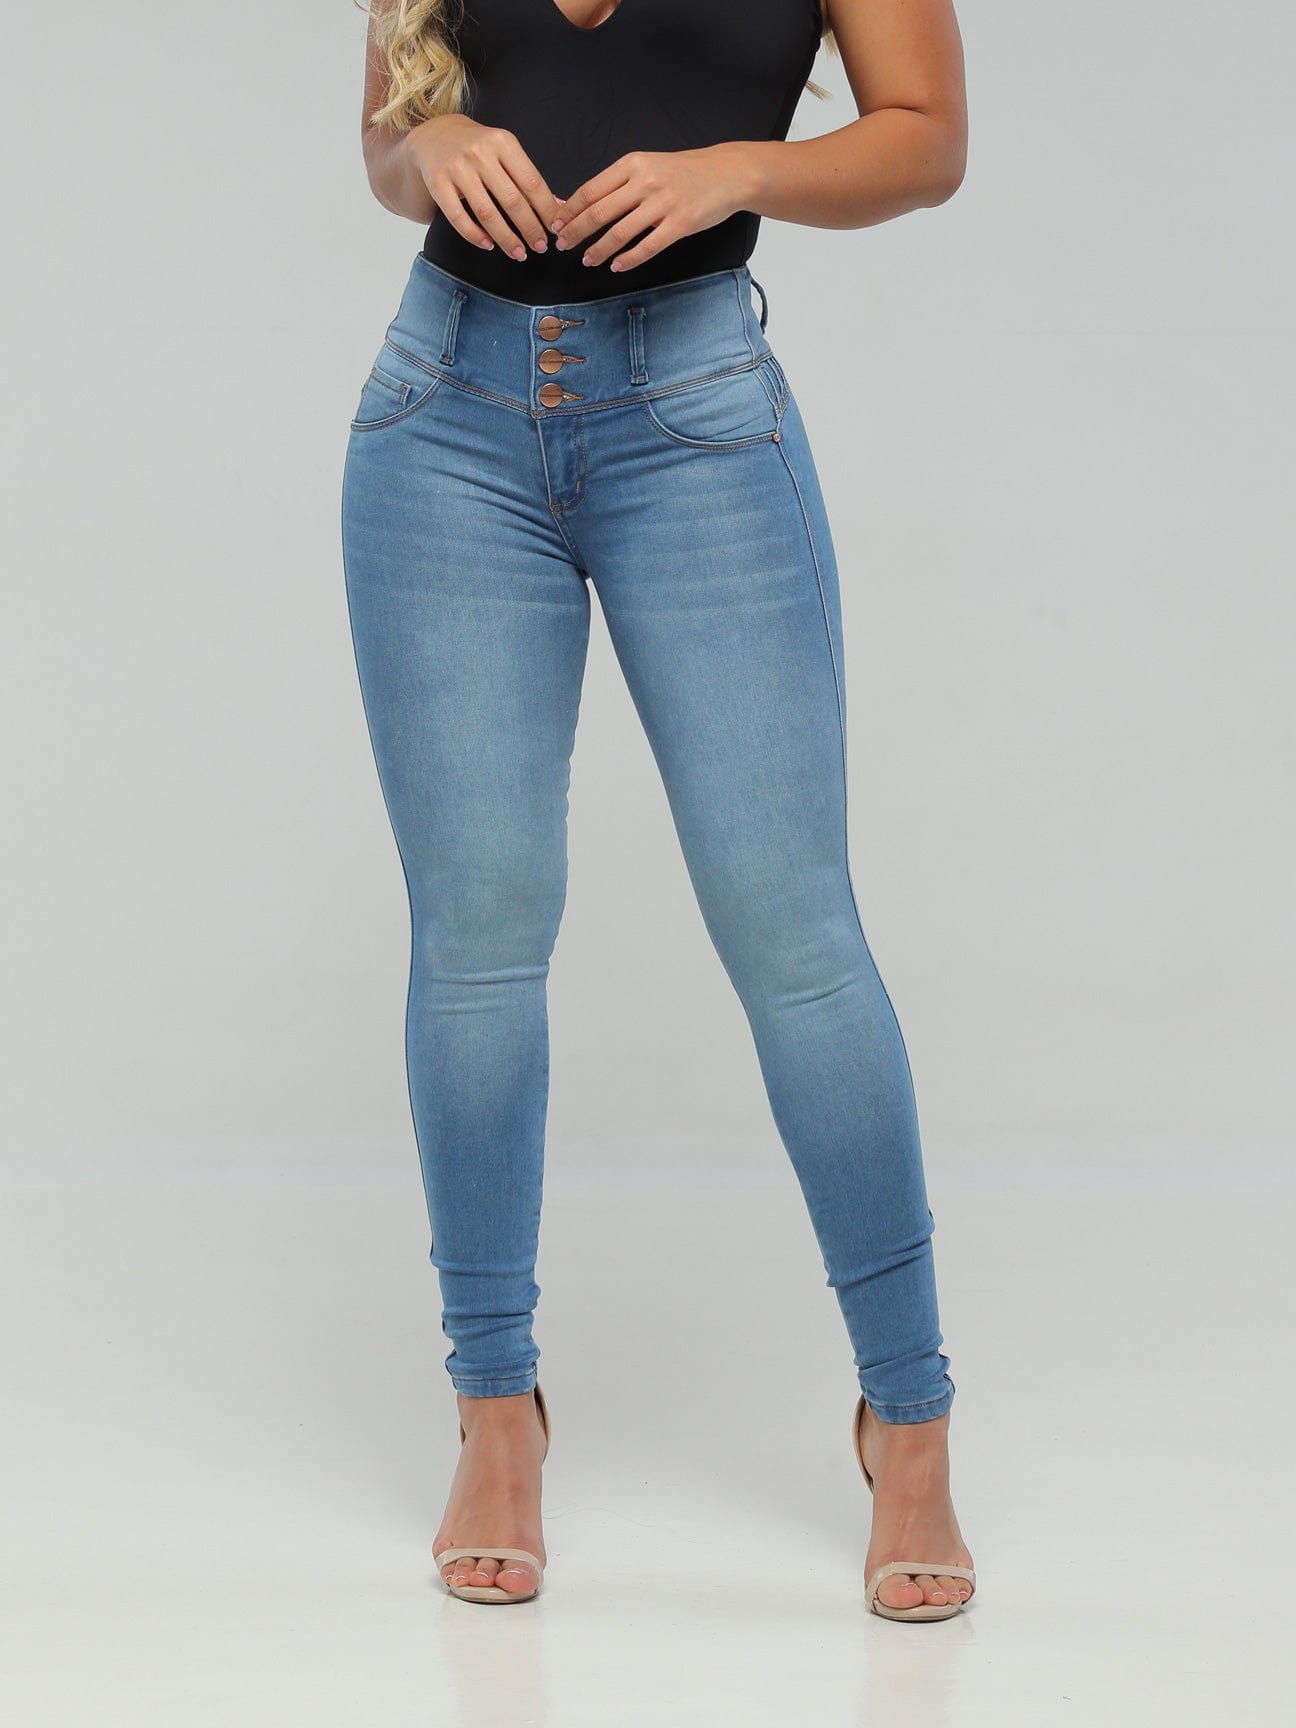 Jeans con levantamiento de glúteos CB1048 